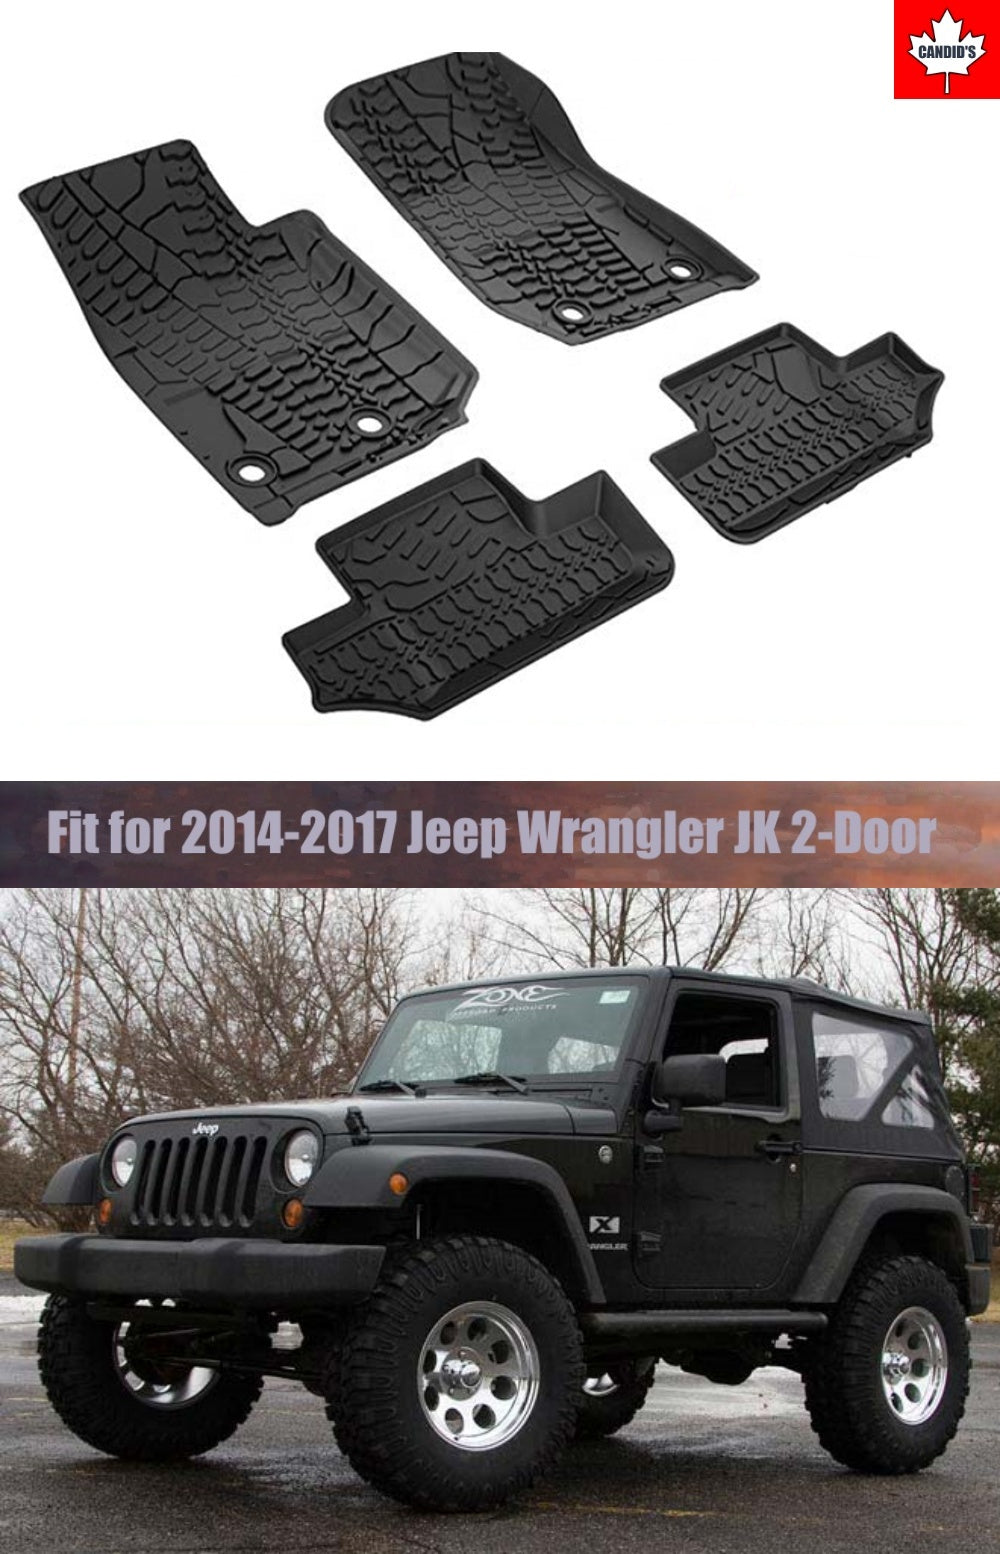 Floor Mats for Jeep Wrangler JK 2-Door 2014-2018 All Weather Guard 1st –  Candid's